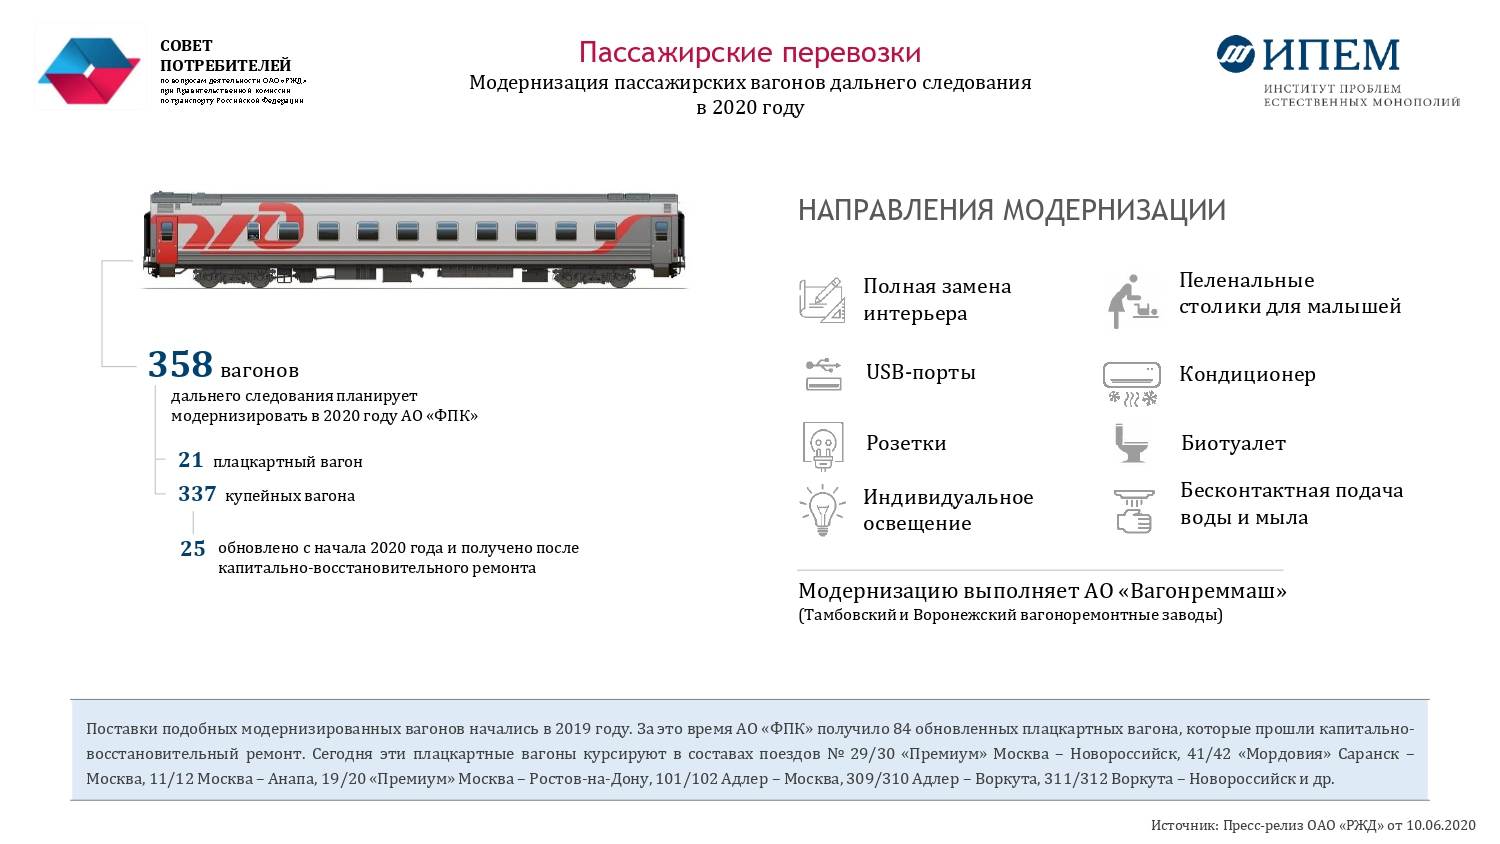 Путешествие с животными на поезде в россии: особенности. рекомендации. какие ограничения бывают?